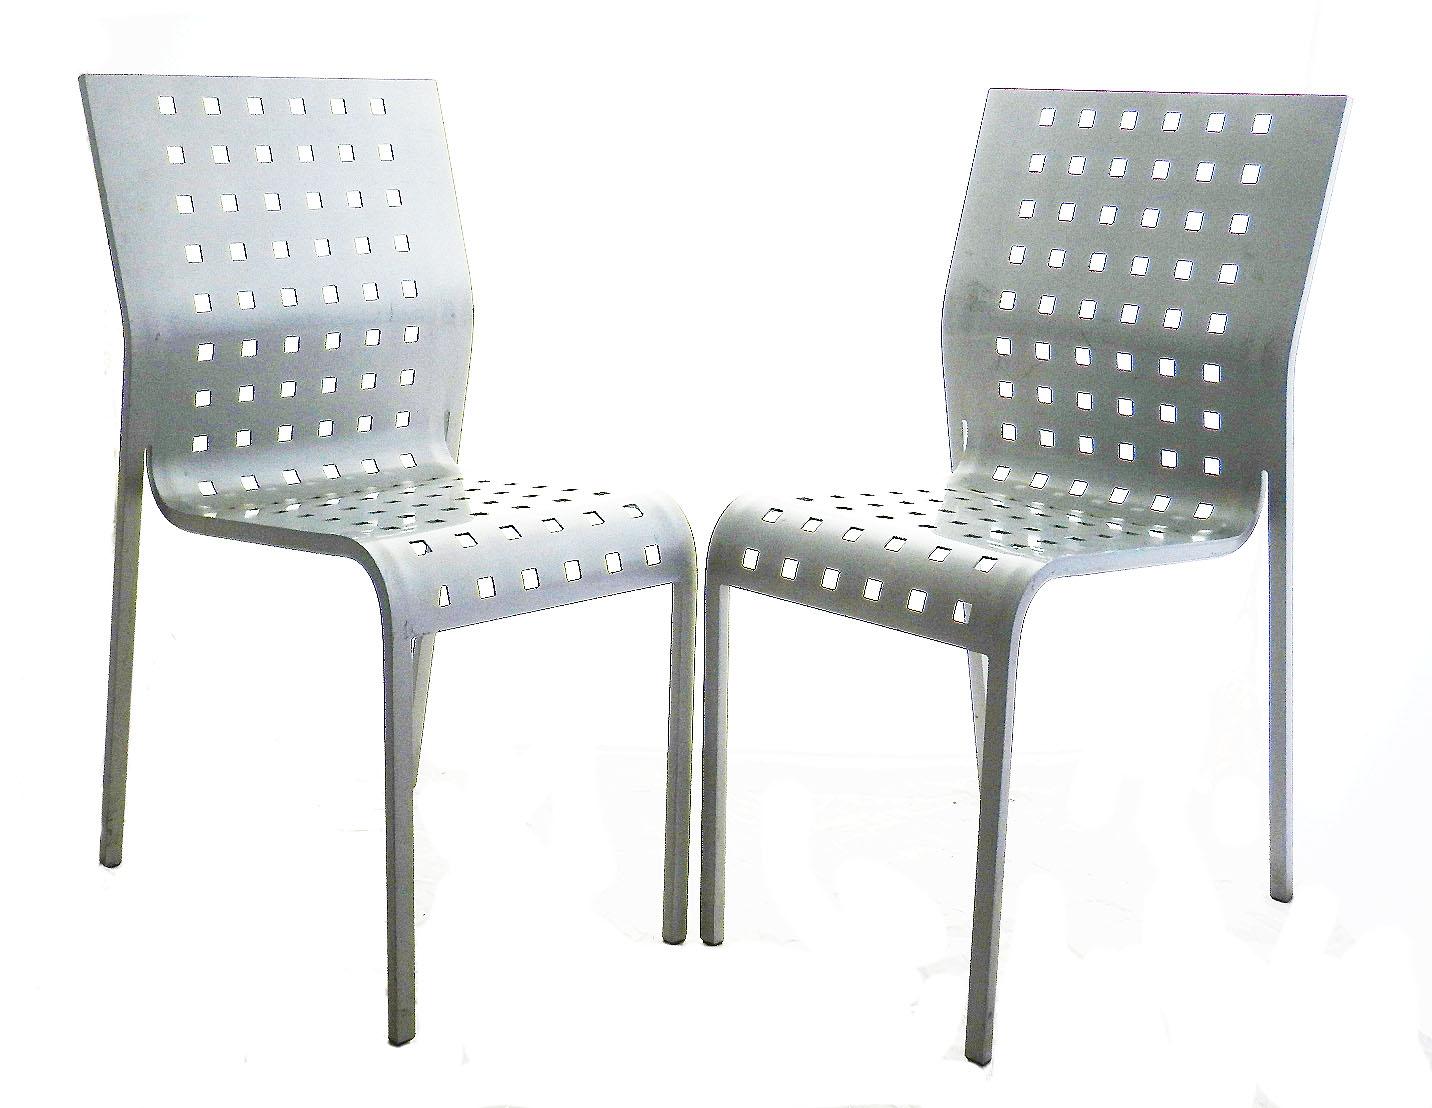 Paire de chaises Mirandolina n° 2068 de Pietro Arosio, Italie, vers 1993
Le siège est formé d'une seule pièce d'aluminium courbé
Très confortable
Bon état vintage avec seulement des signes mineurs d'utilisation.
Provenance : succession du